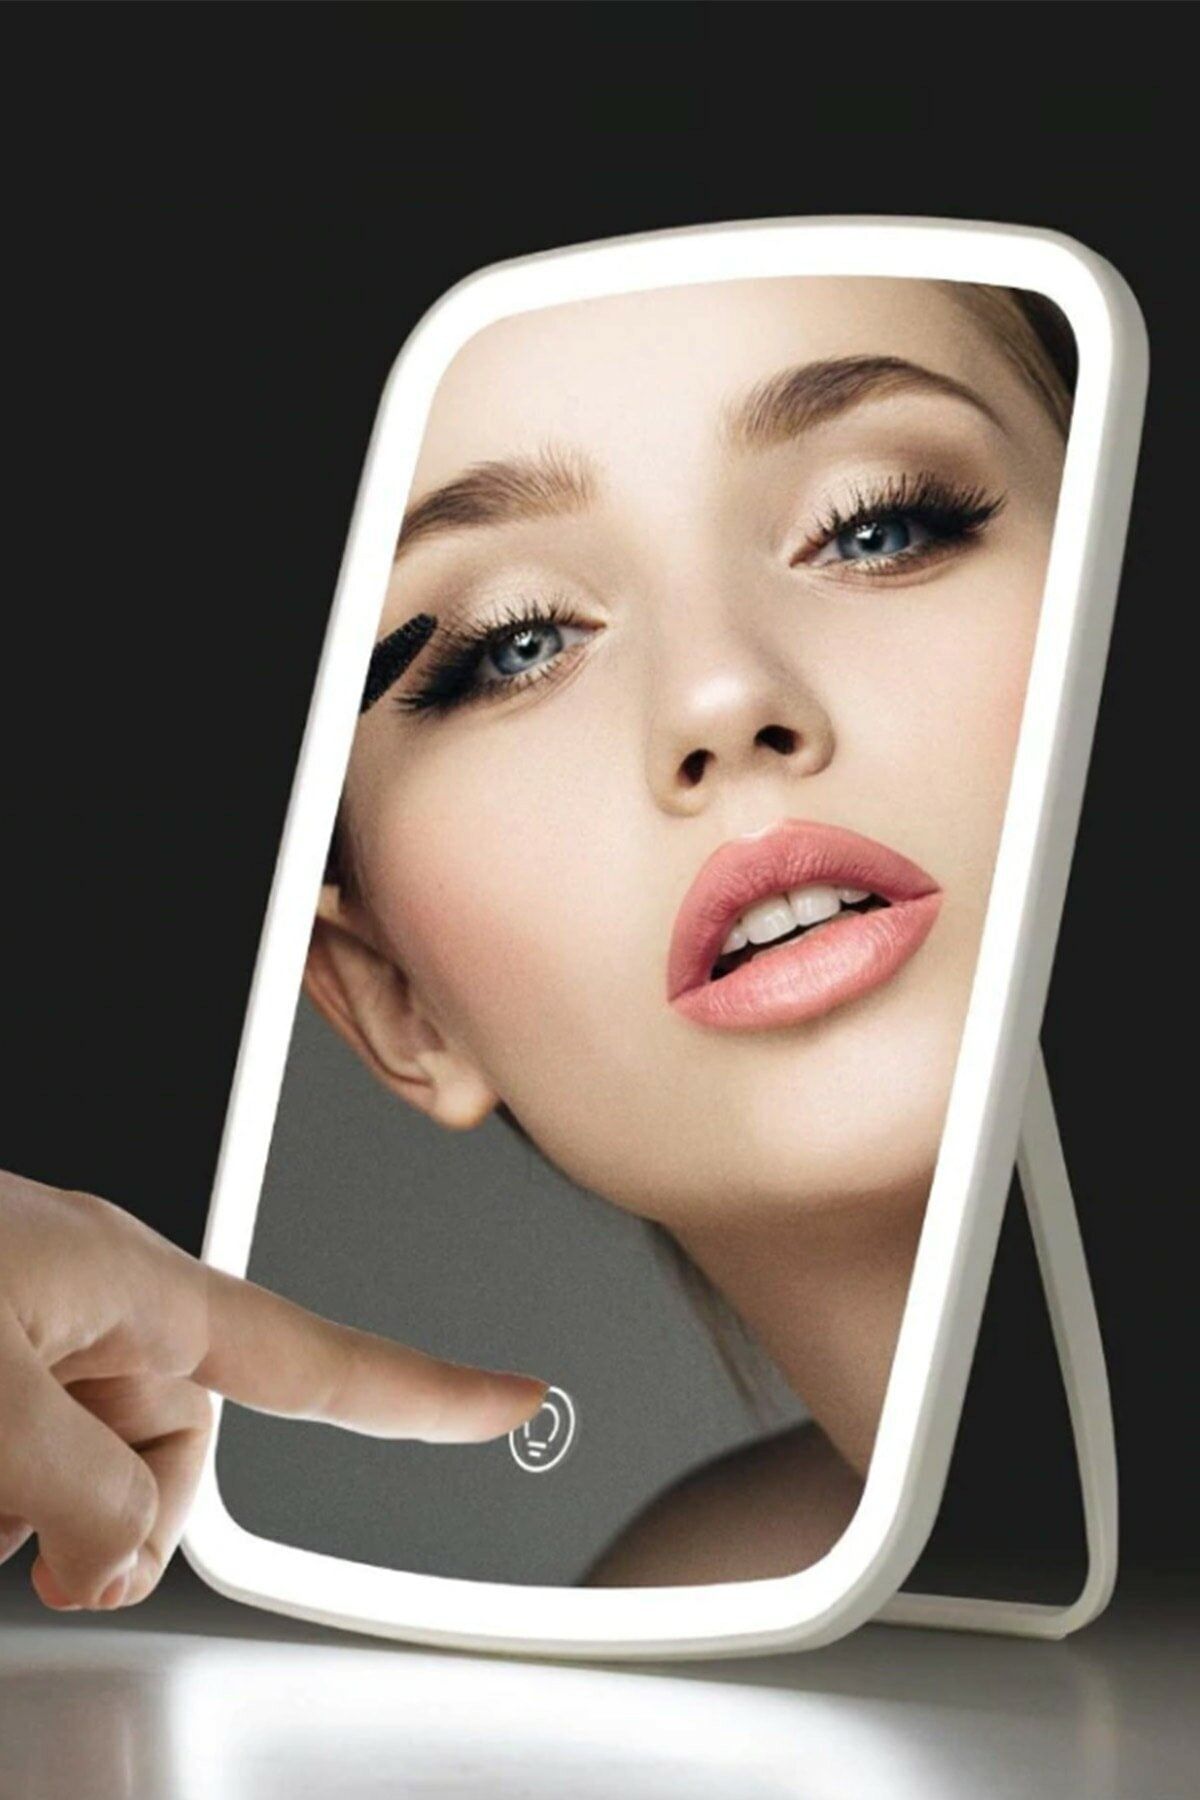 Xiaomi Jordan Judy Led Makeup Mirror